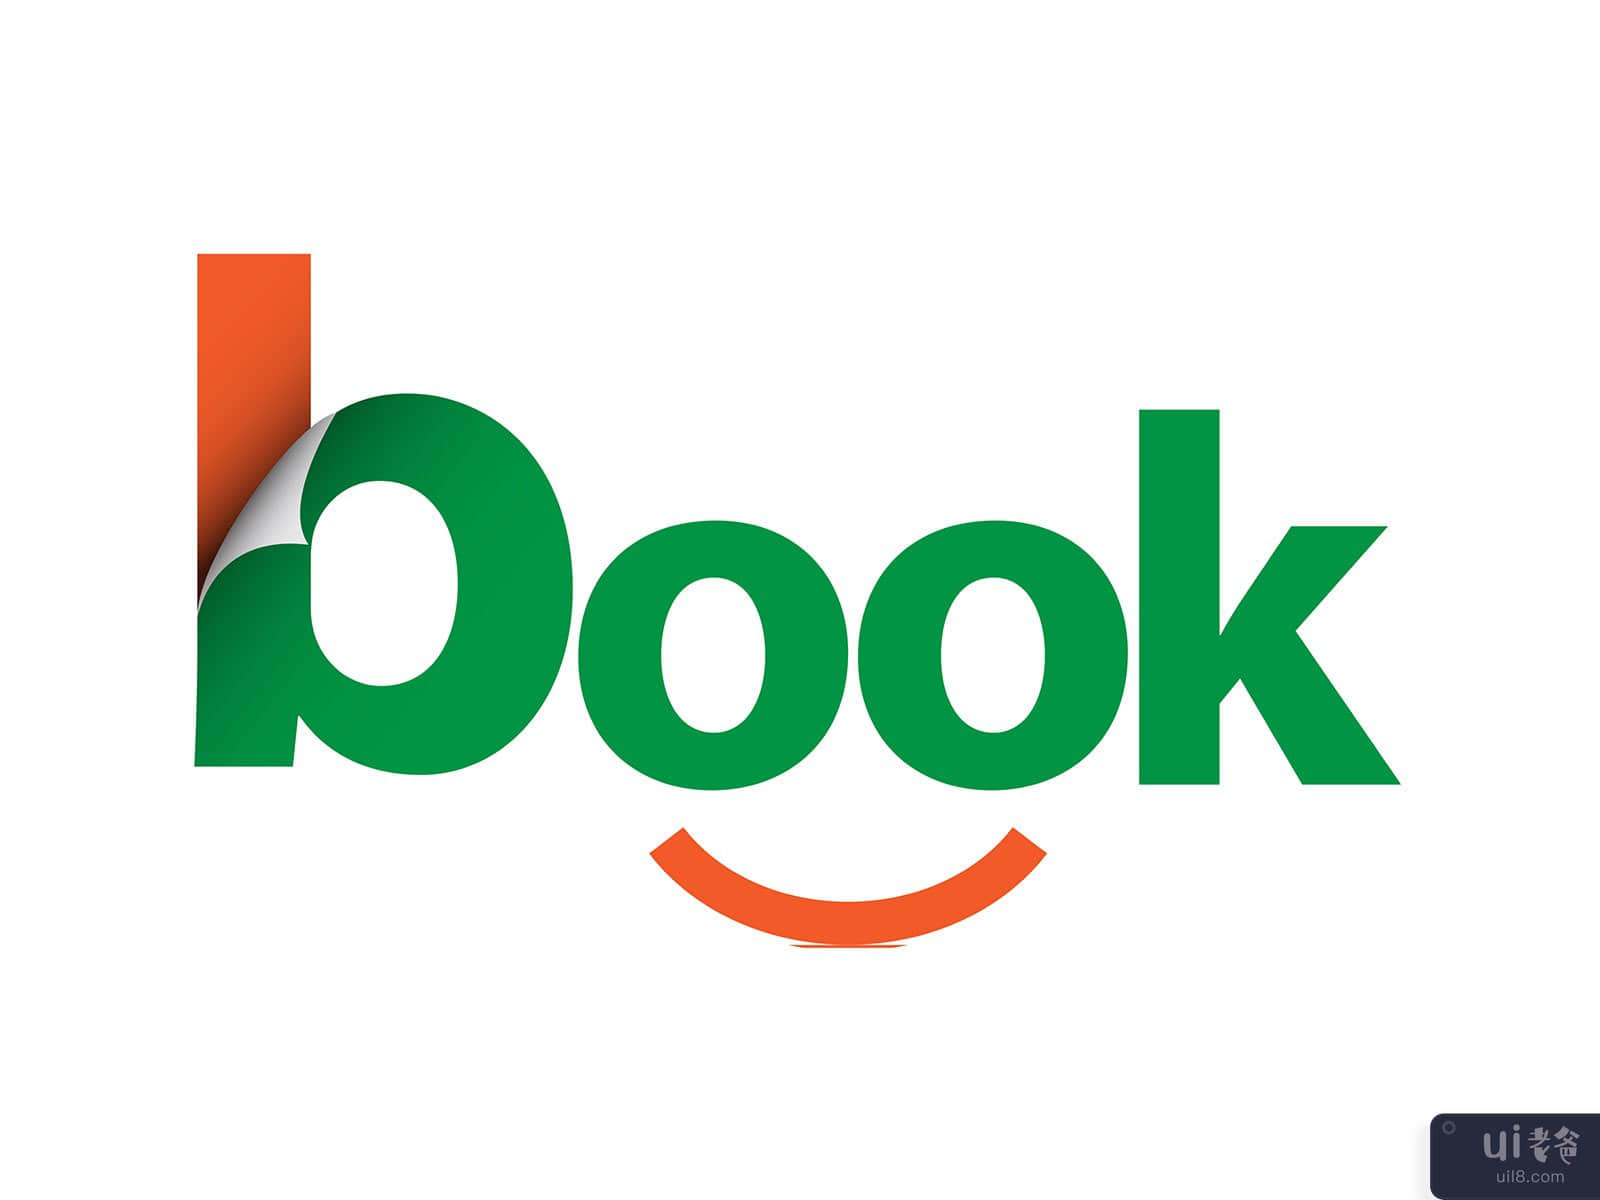 Book logo template design